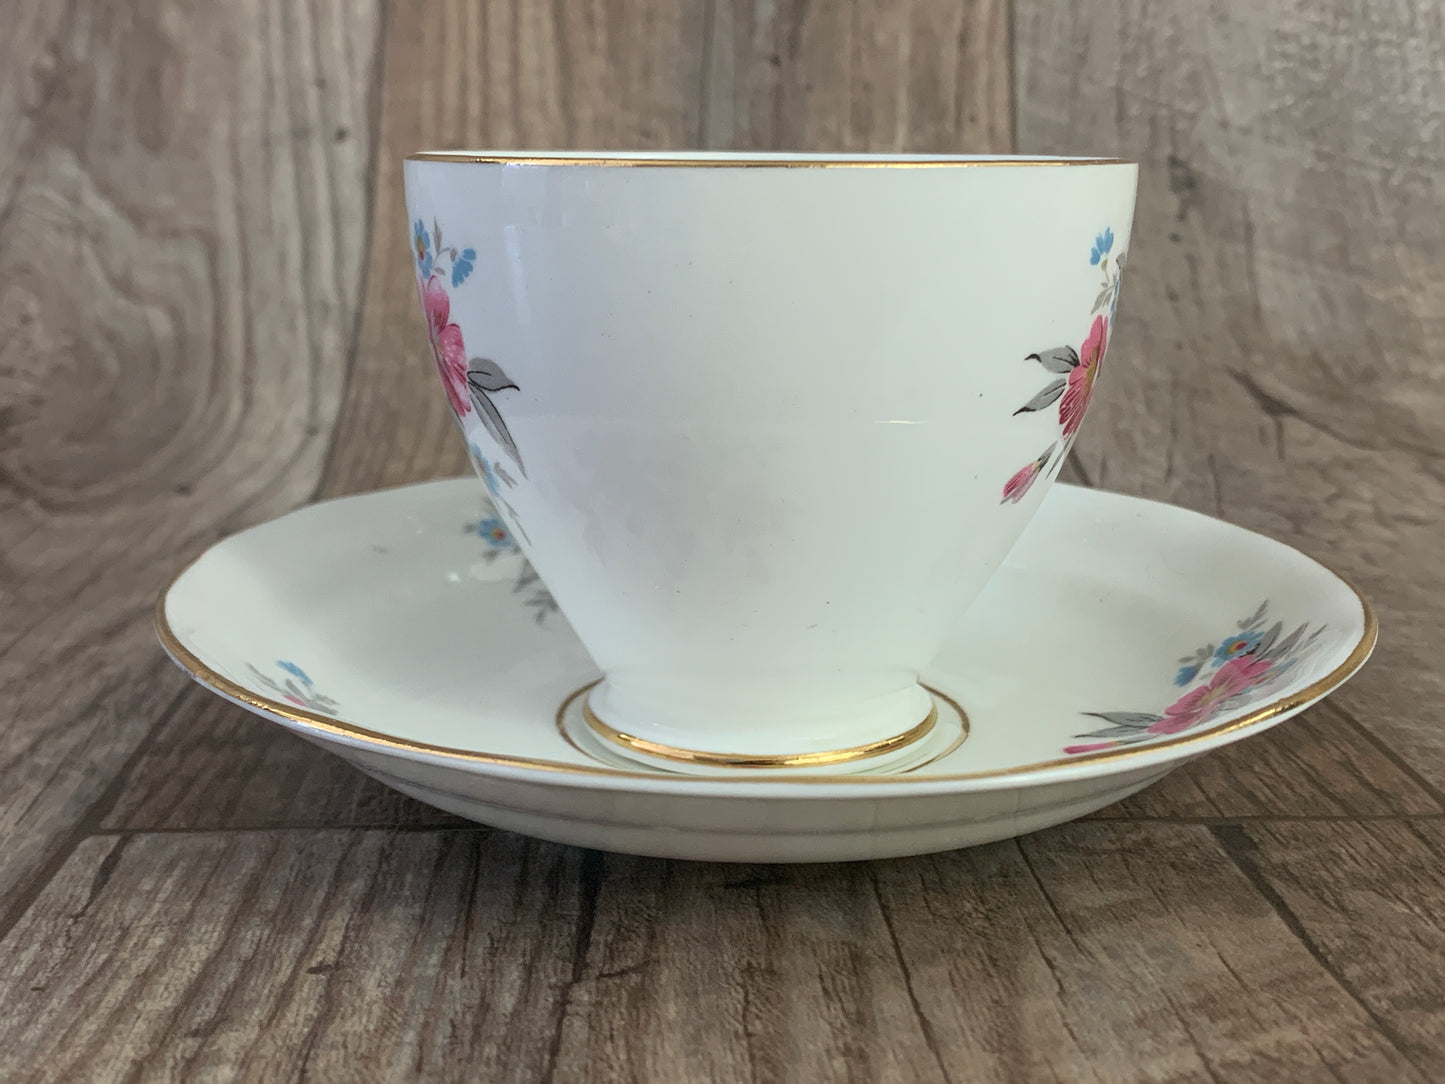 Pink and Blue Floral Vintage Teacup and Saucer Set